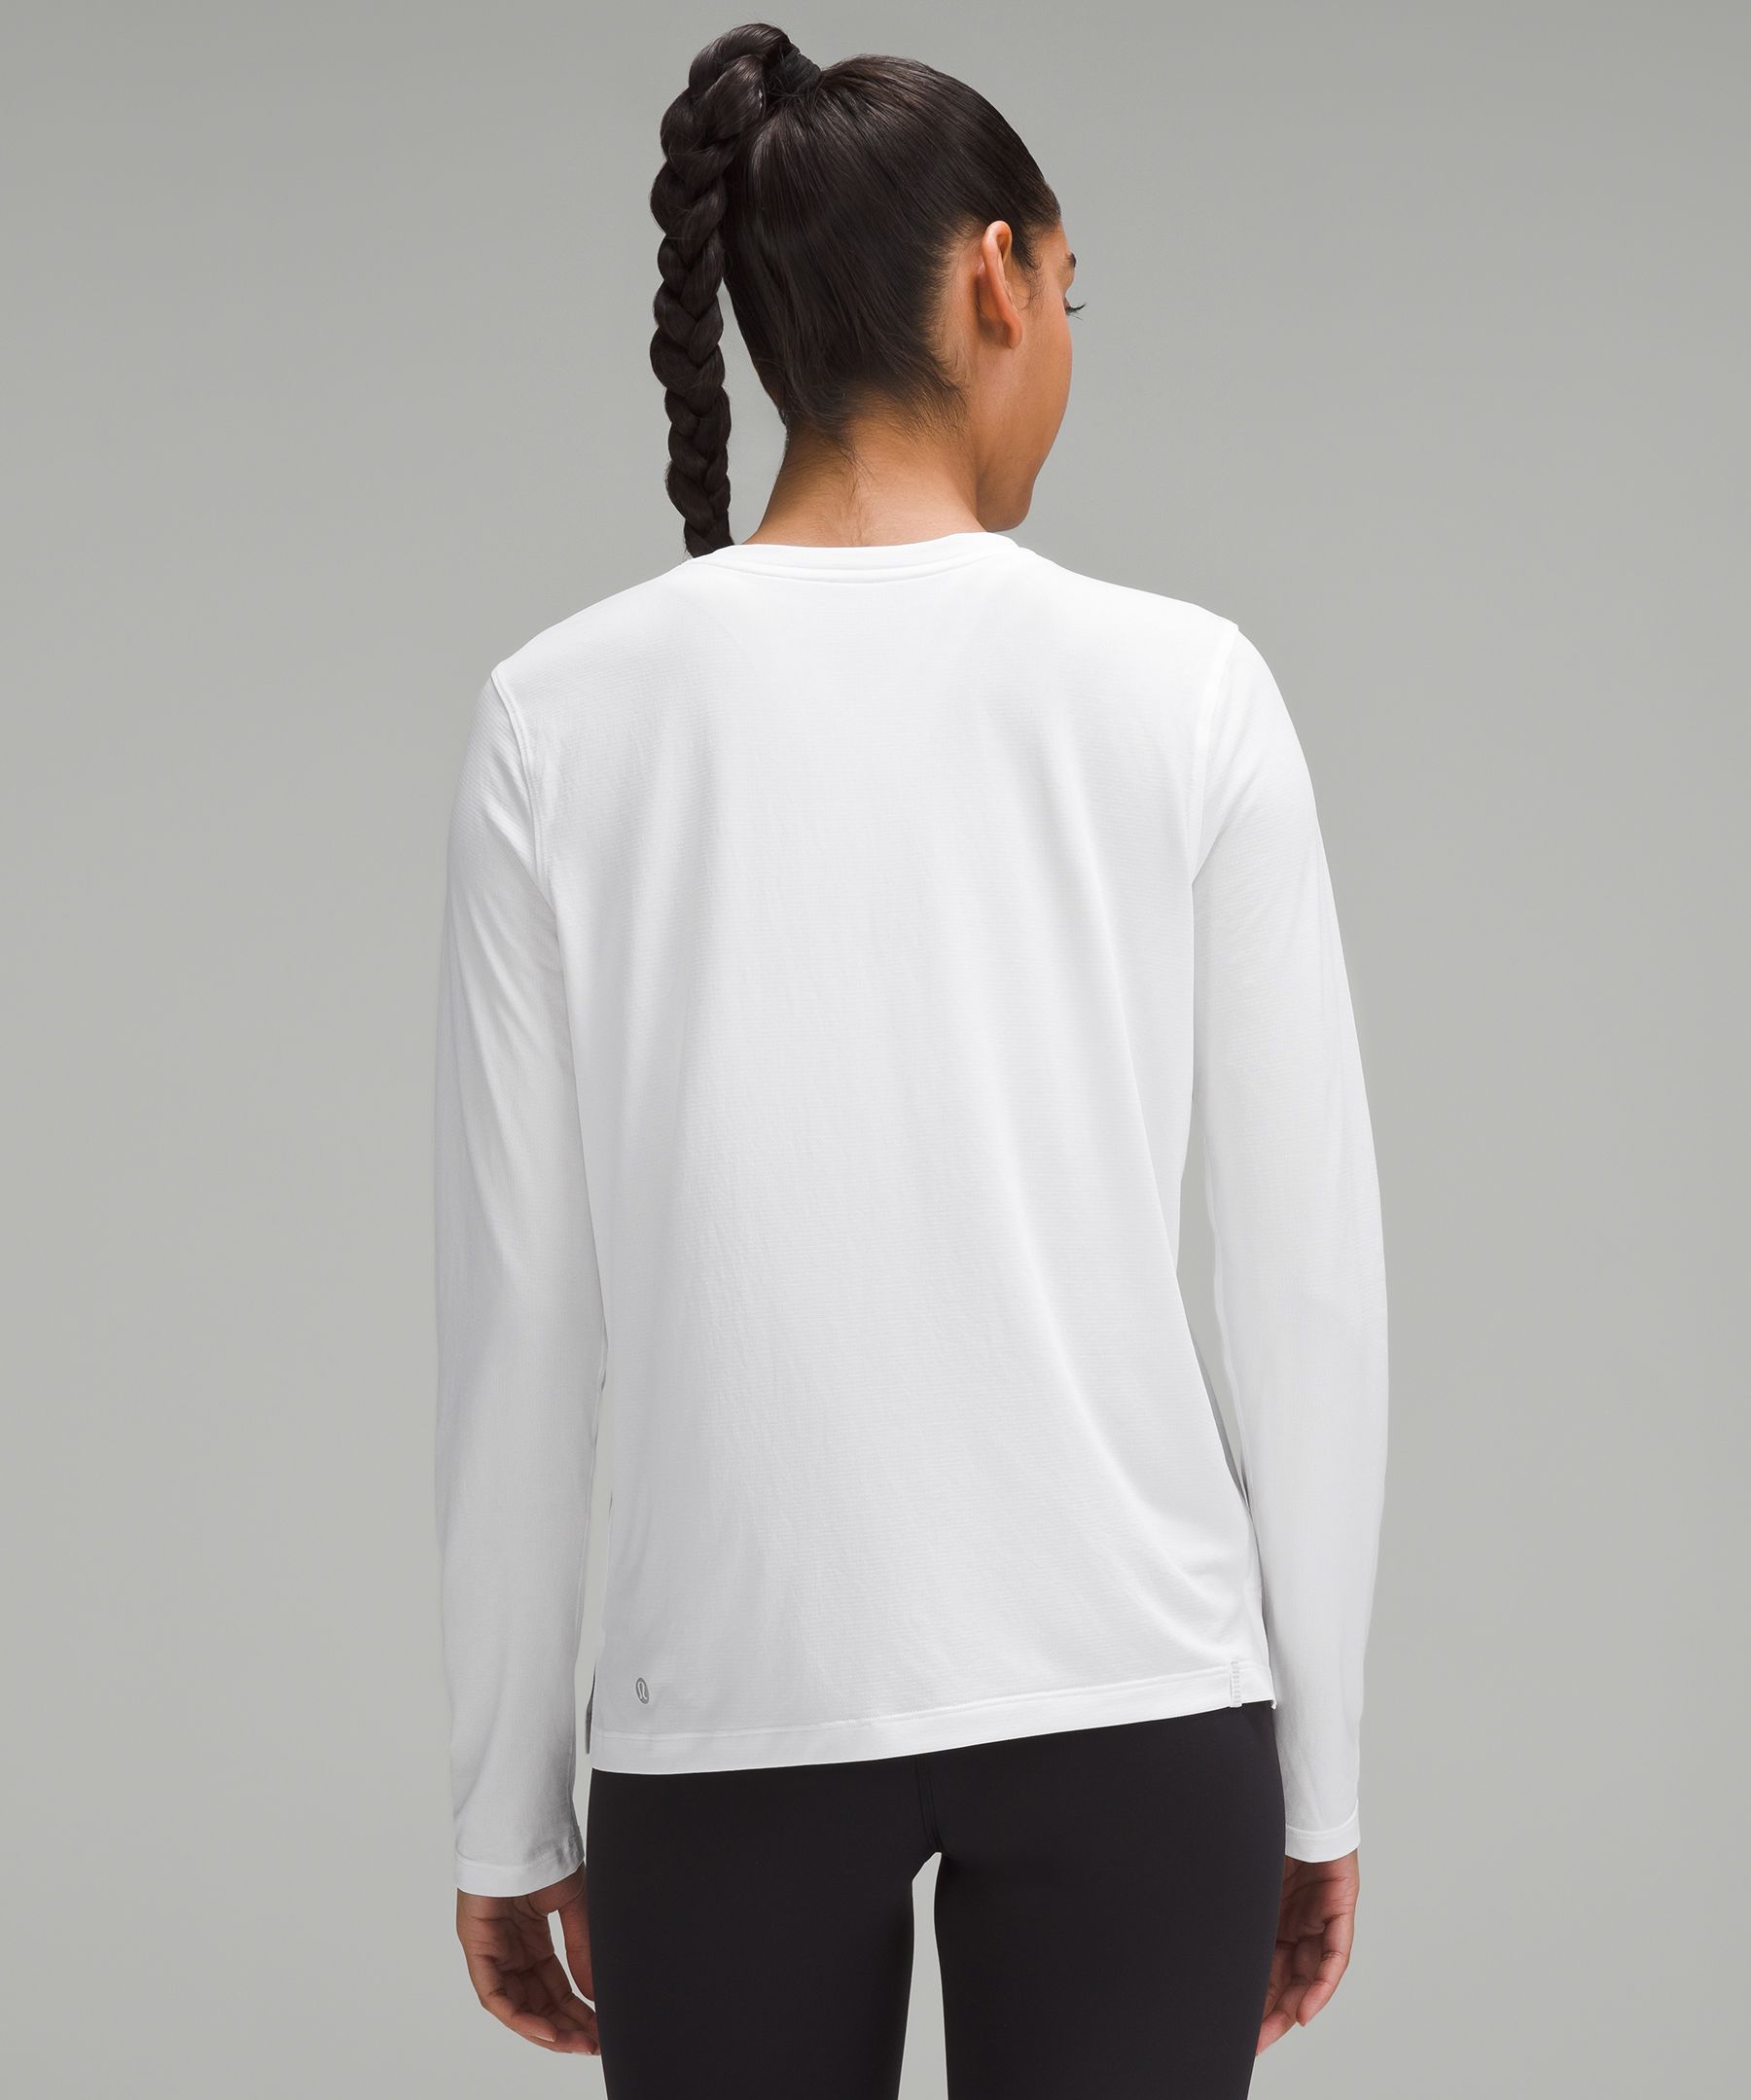 Ultralight Hip-Length Long-Sleeve Shirt, Women's Long Sleeve Shirts